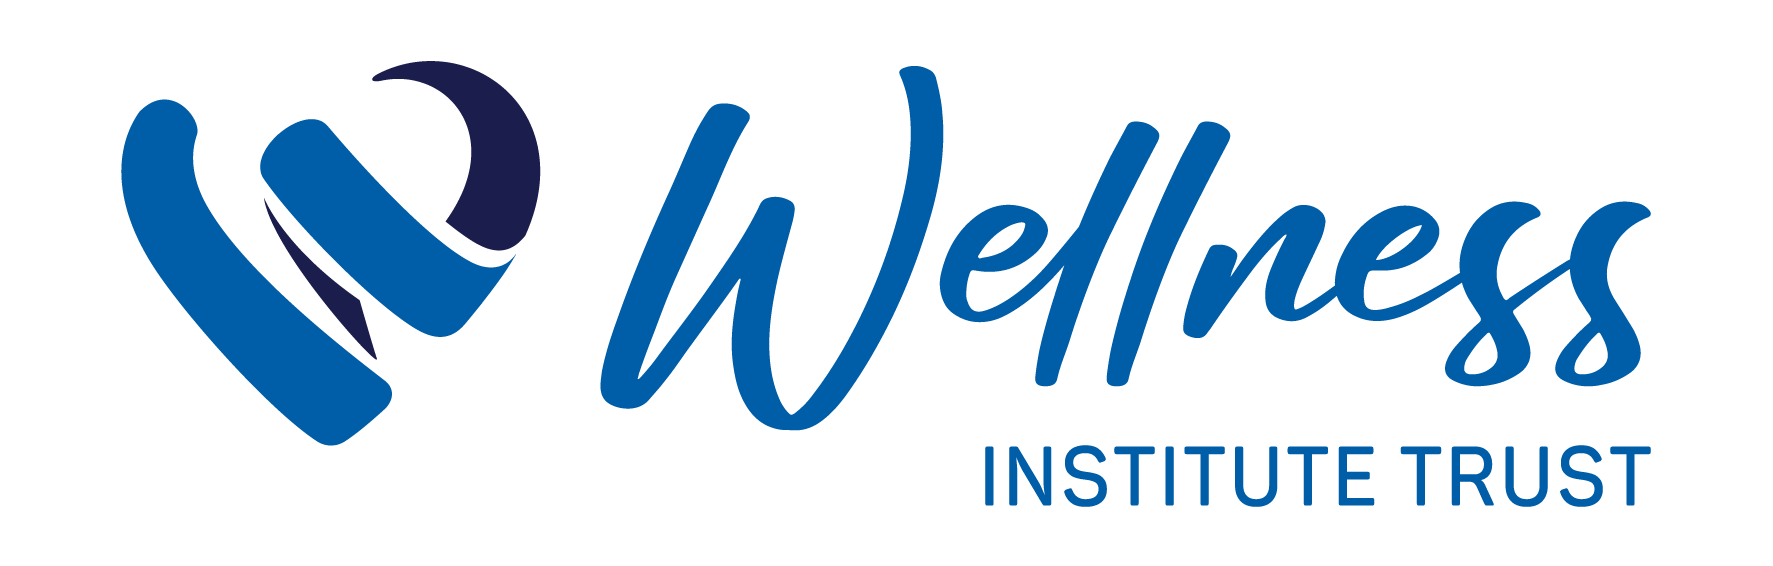 Wellness Institute Trust